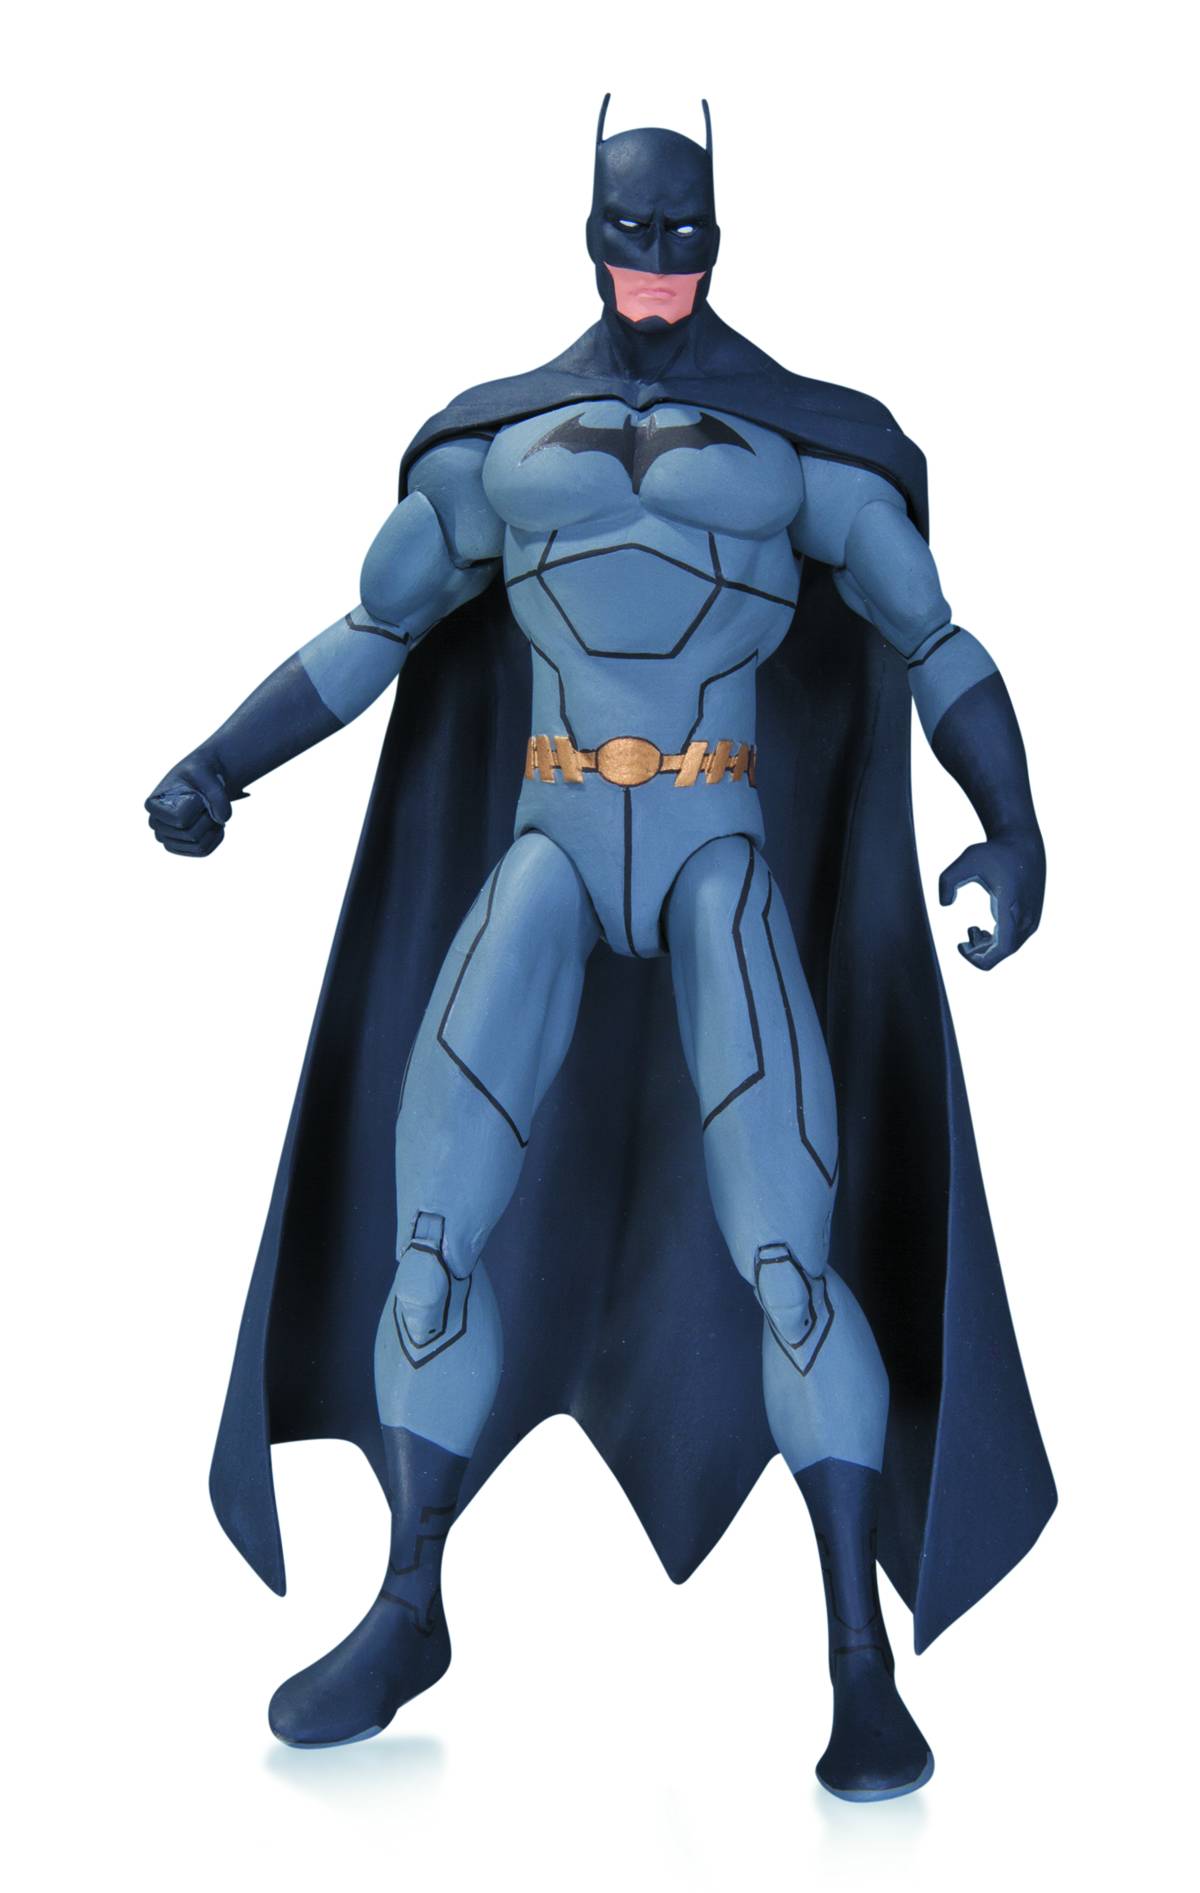 DC Collectibles The Batman Adventures Two-face Action Figure JUN140315 for sale online